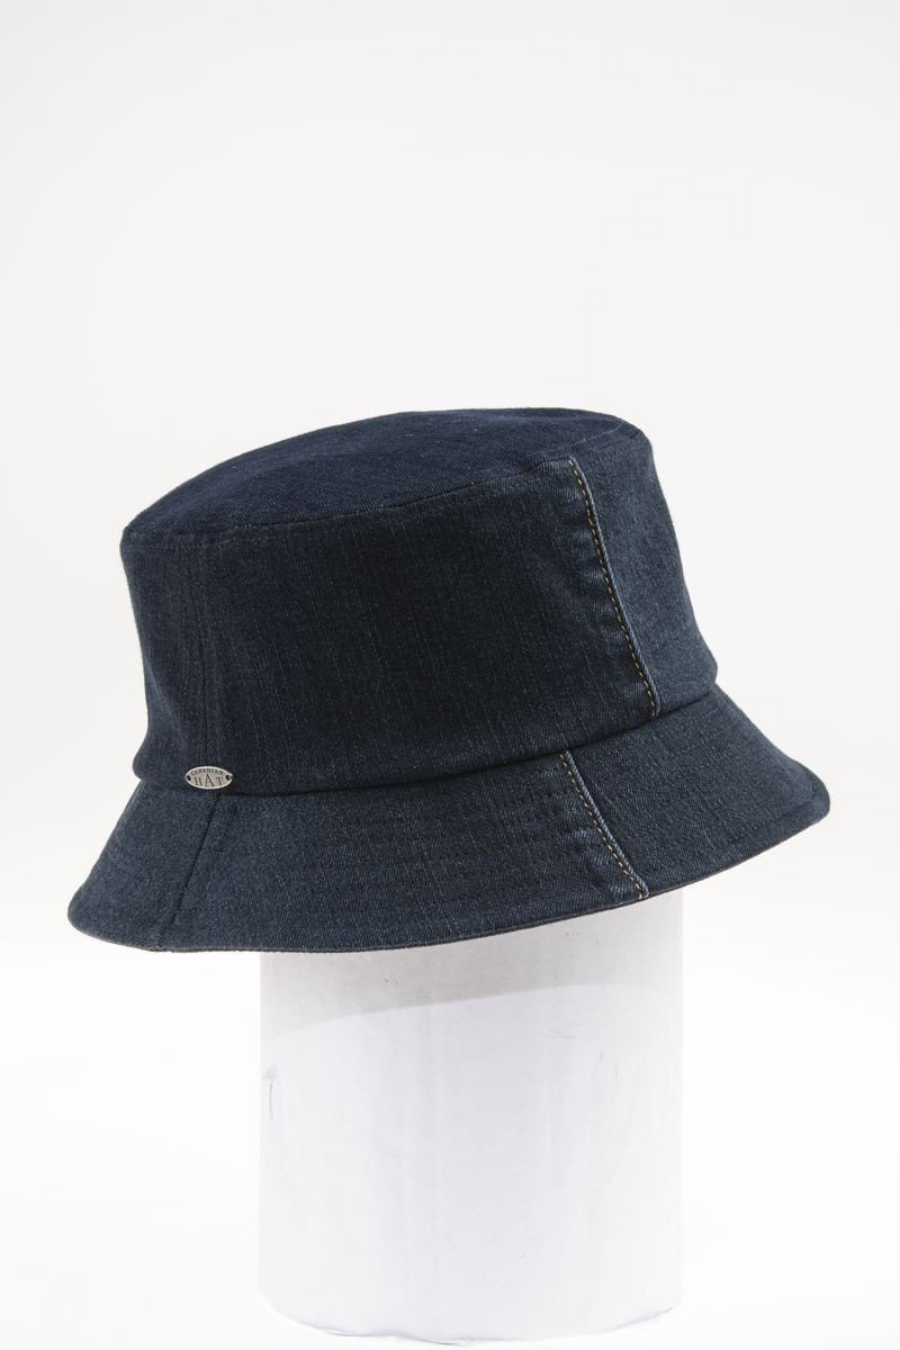 Jillian- Lined Bucket Hat in Up-cycled Jean